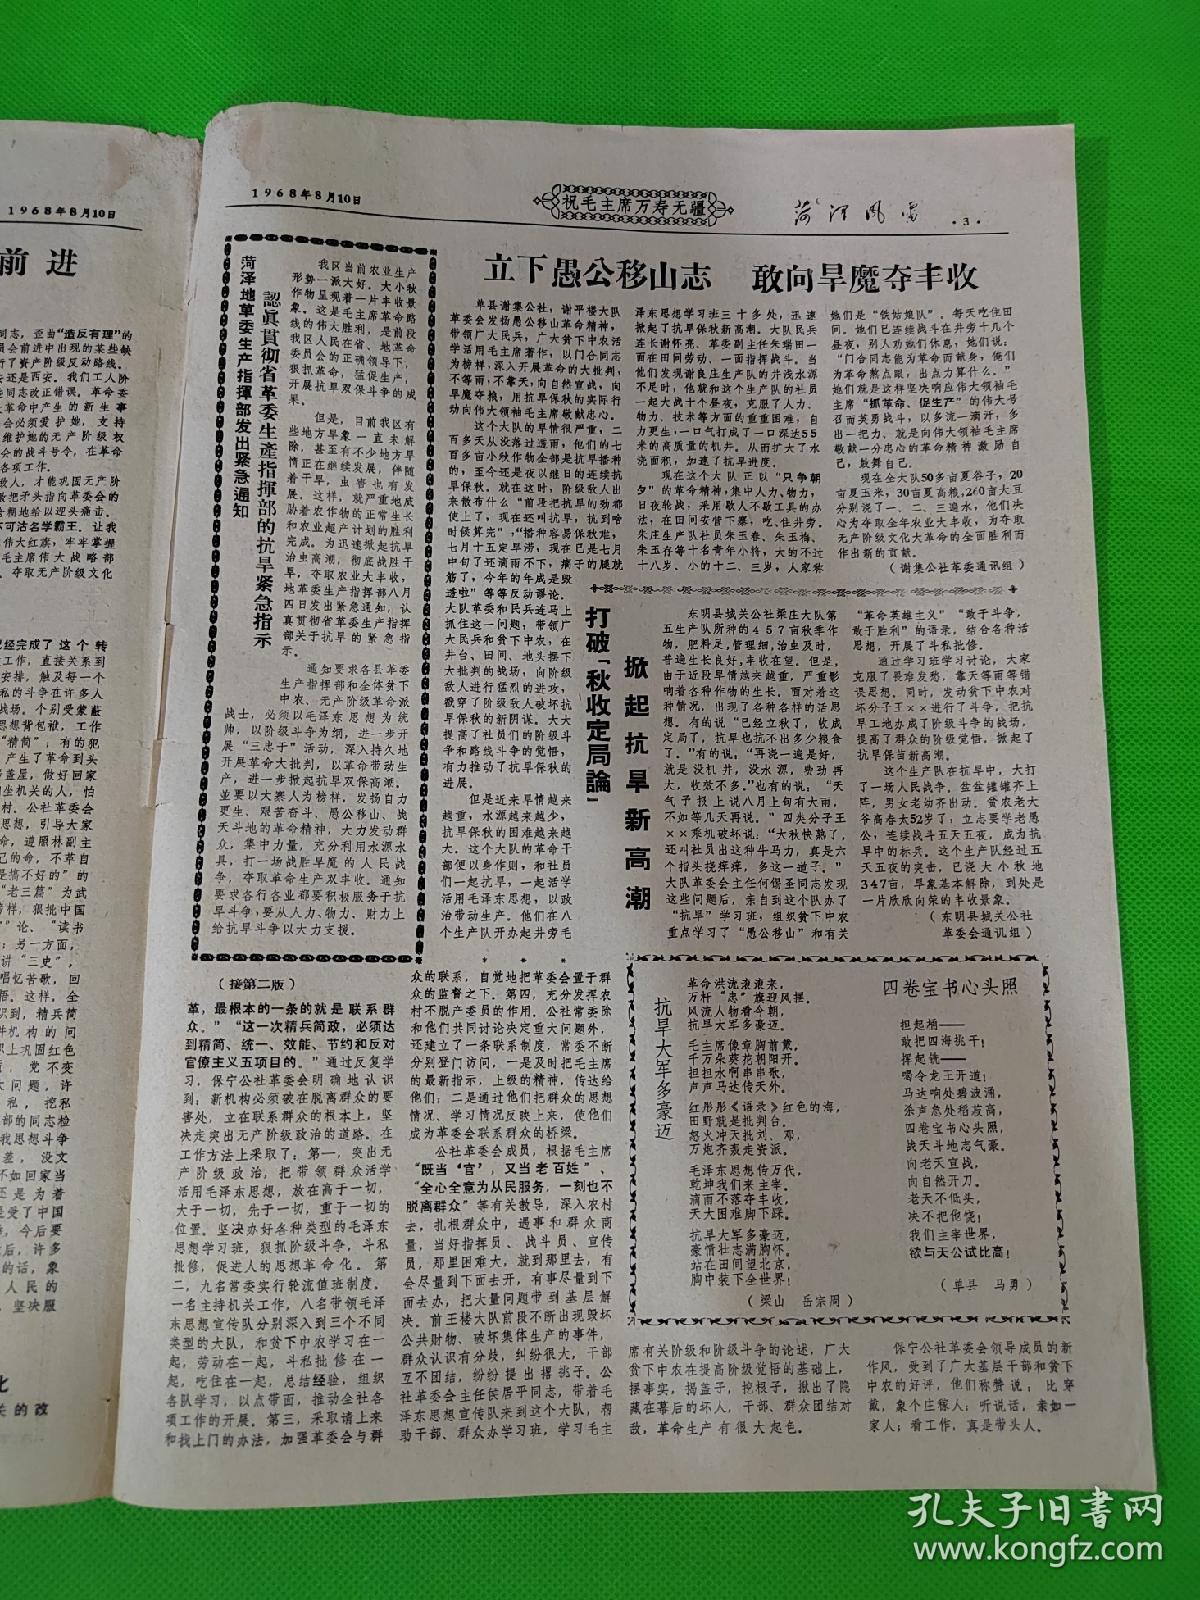 菏泽风雷   第94期  1968.8.10